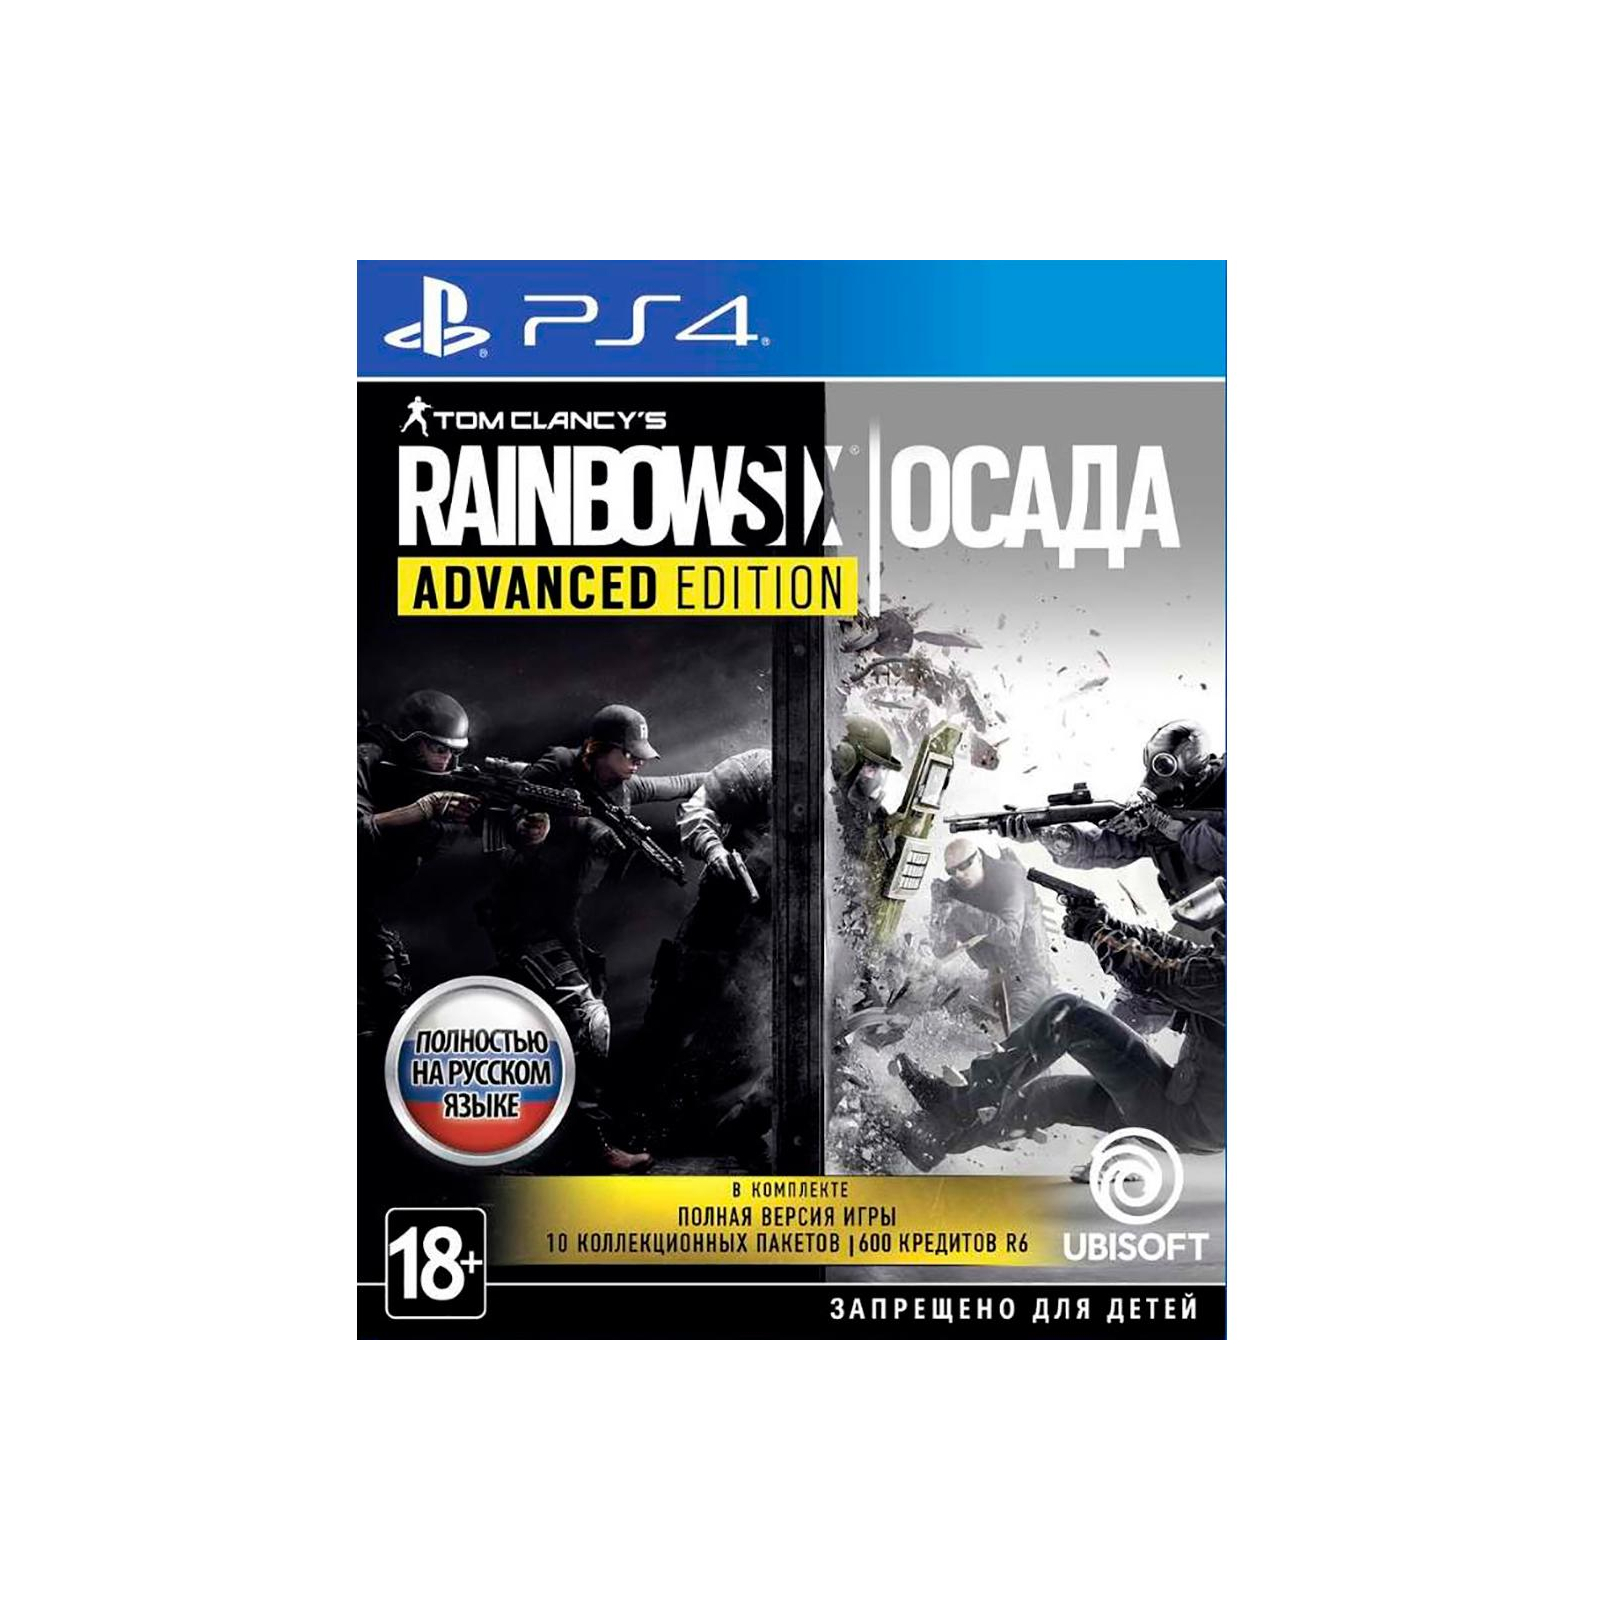 Гра Sony Tom Clancy's Rainbow Six: Осада [PS4, Russian version] (8110093)